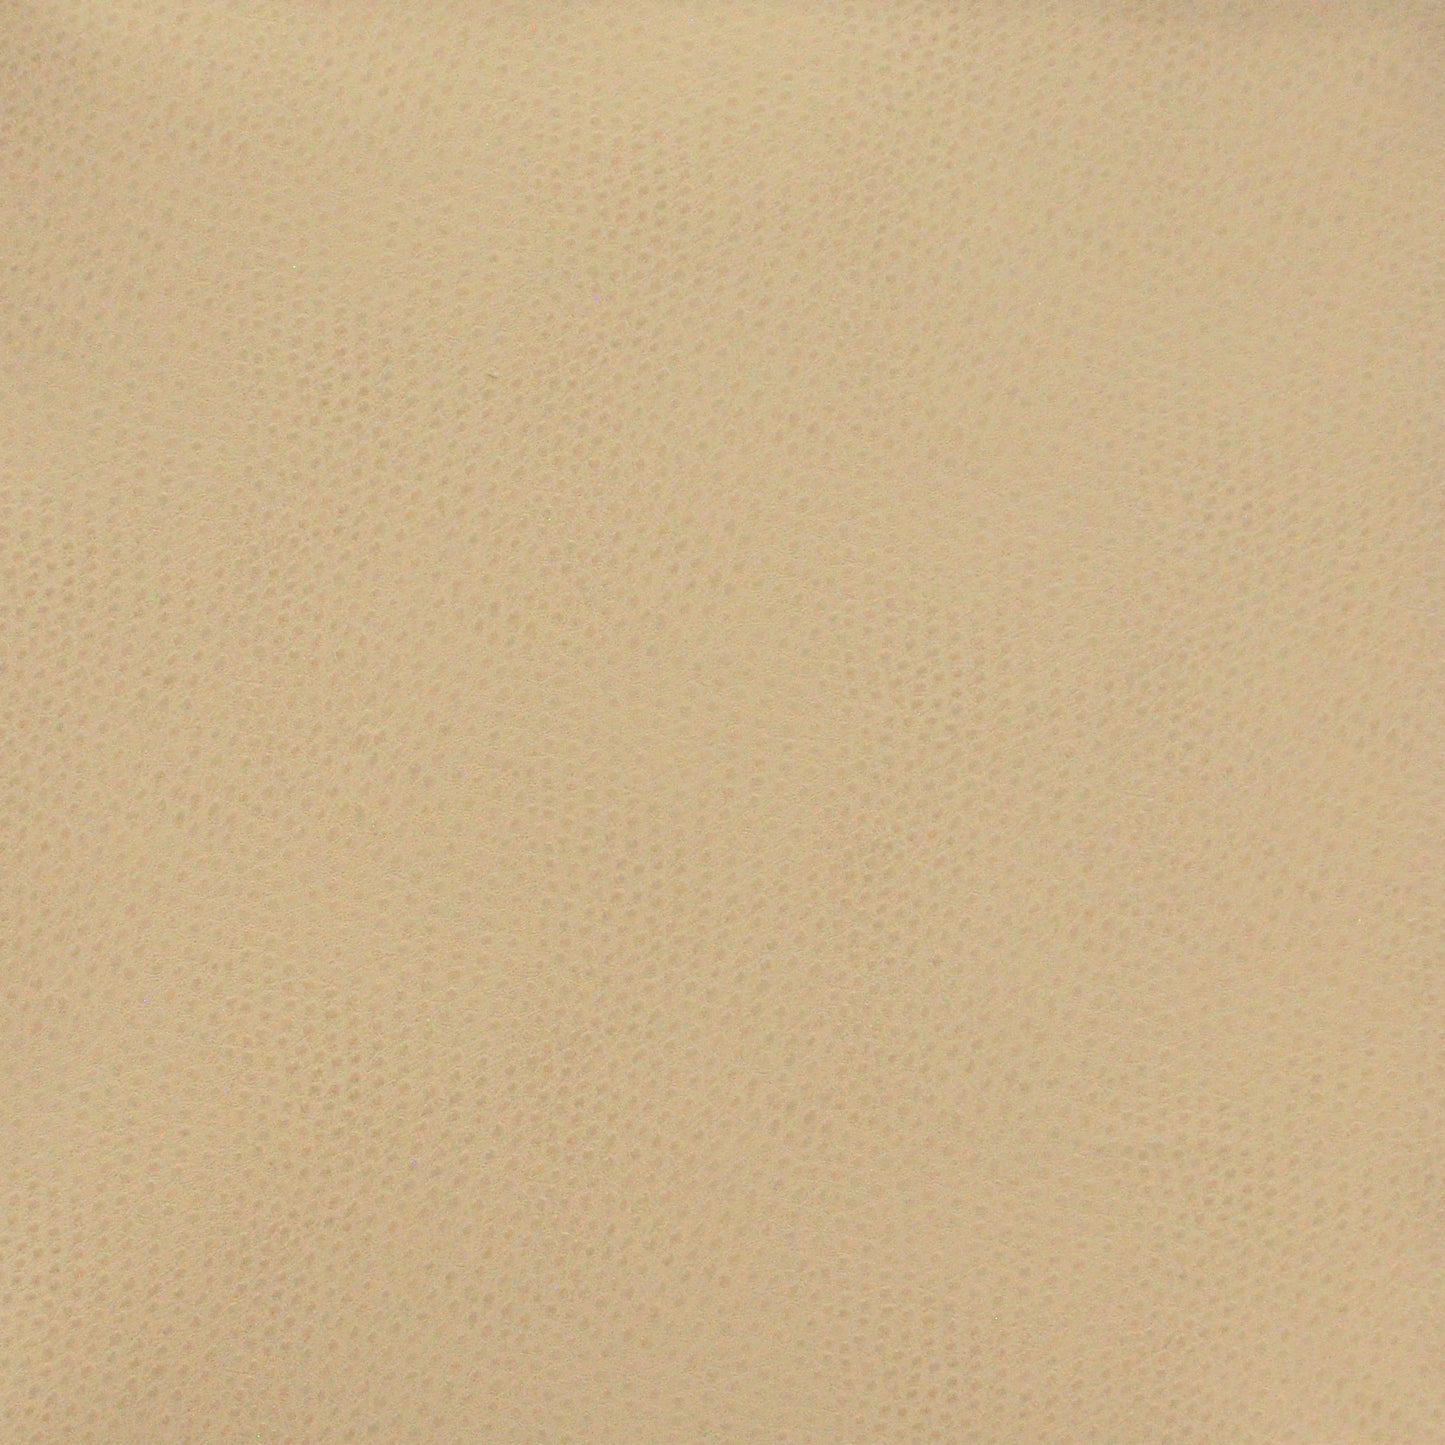 Purchase Maxwell Fabric - Buckeye, # 764 Sand